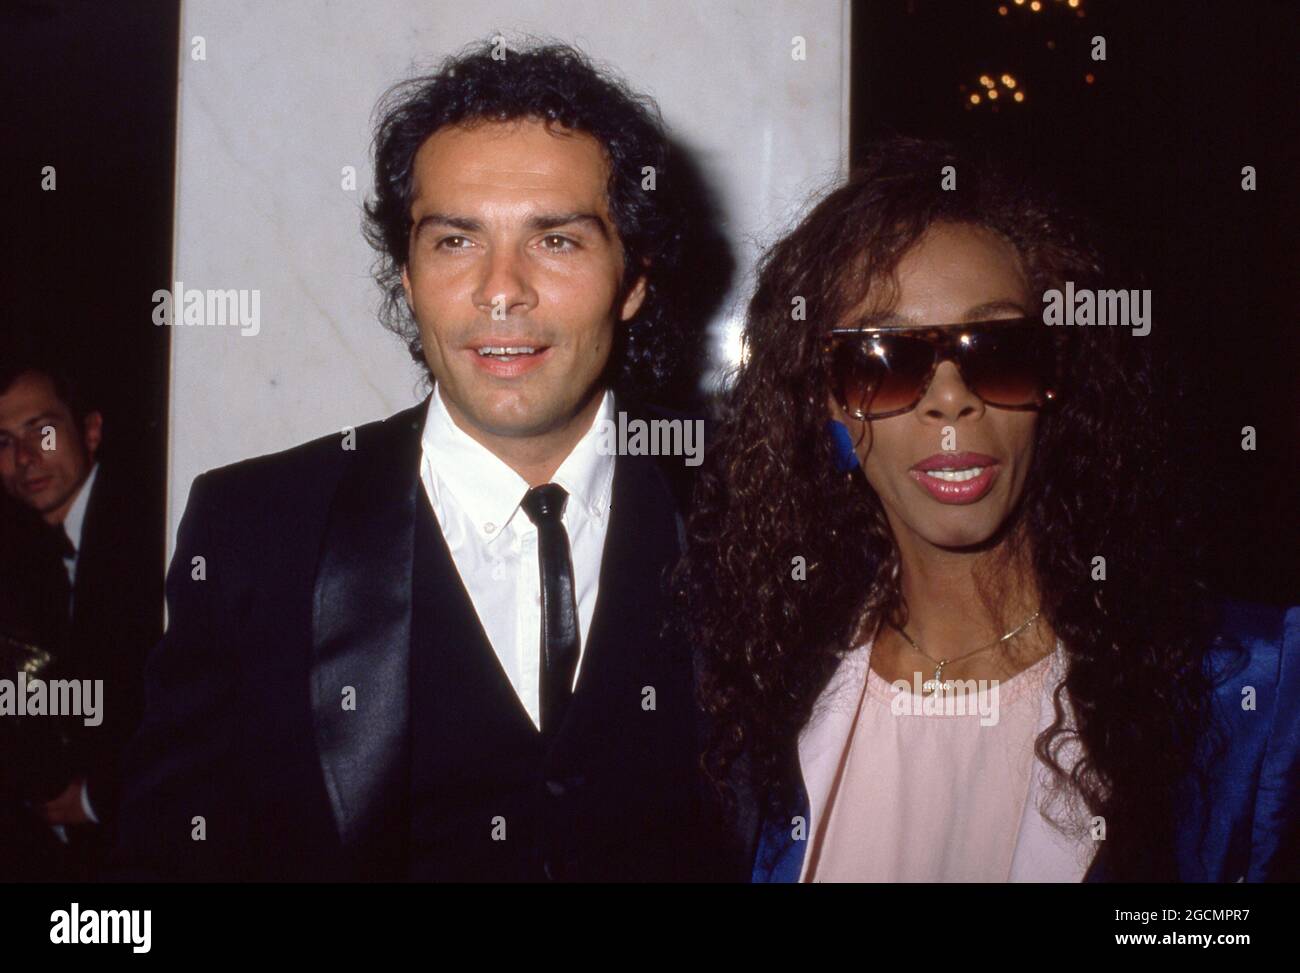 Donna Summer et Bruce Sudano Circa des années 80 crédit: Ralph Dominguez/MediaPunch Banque D'Images